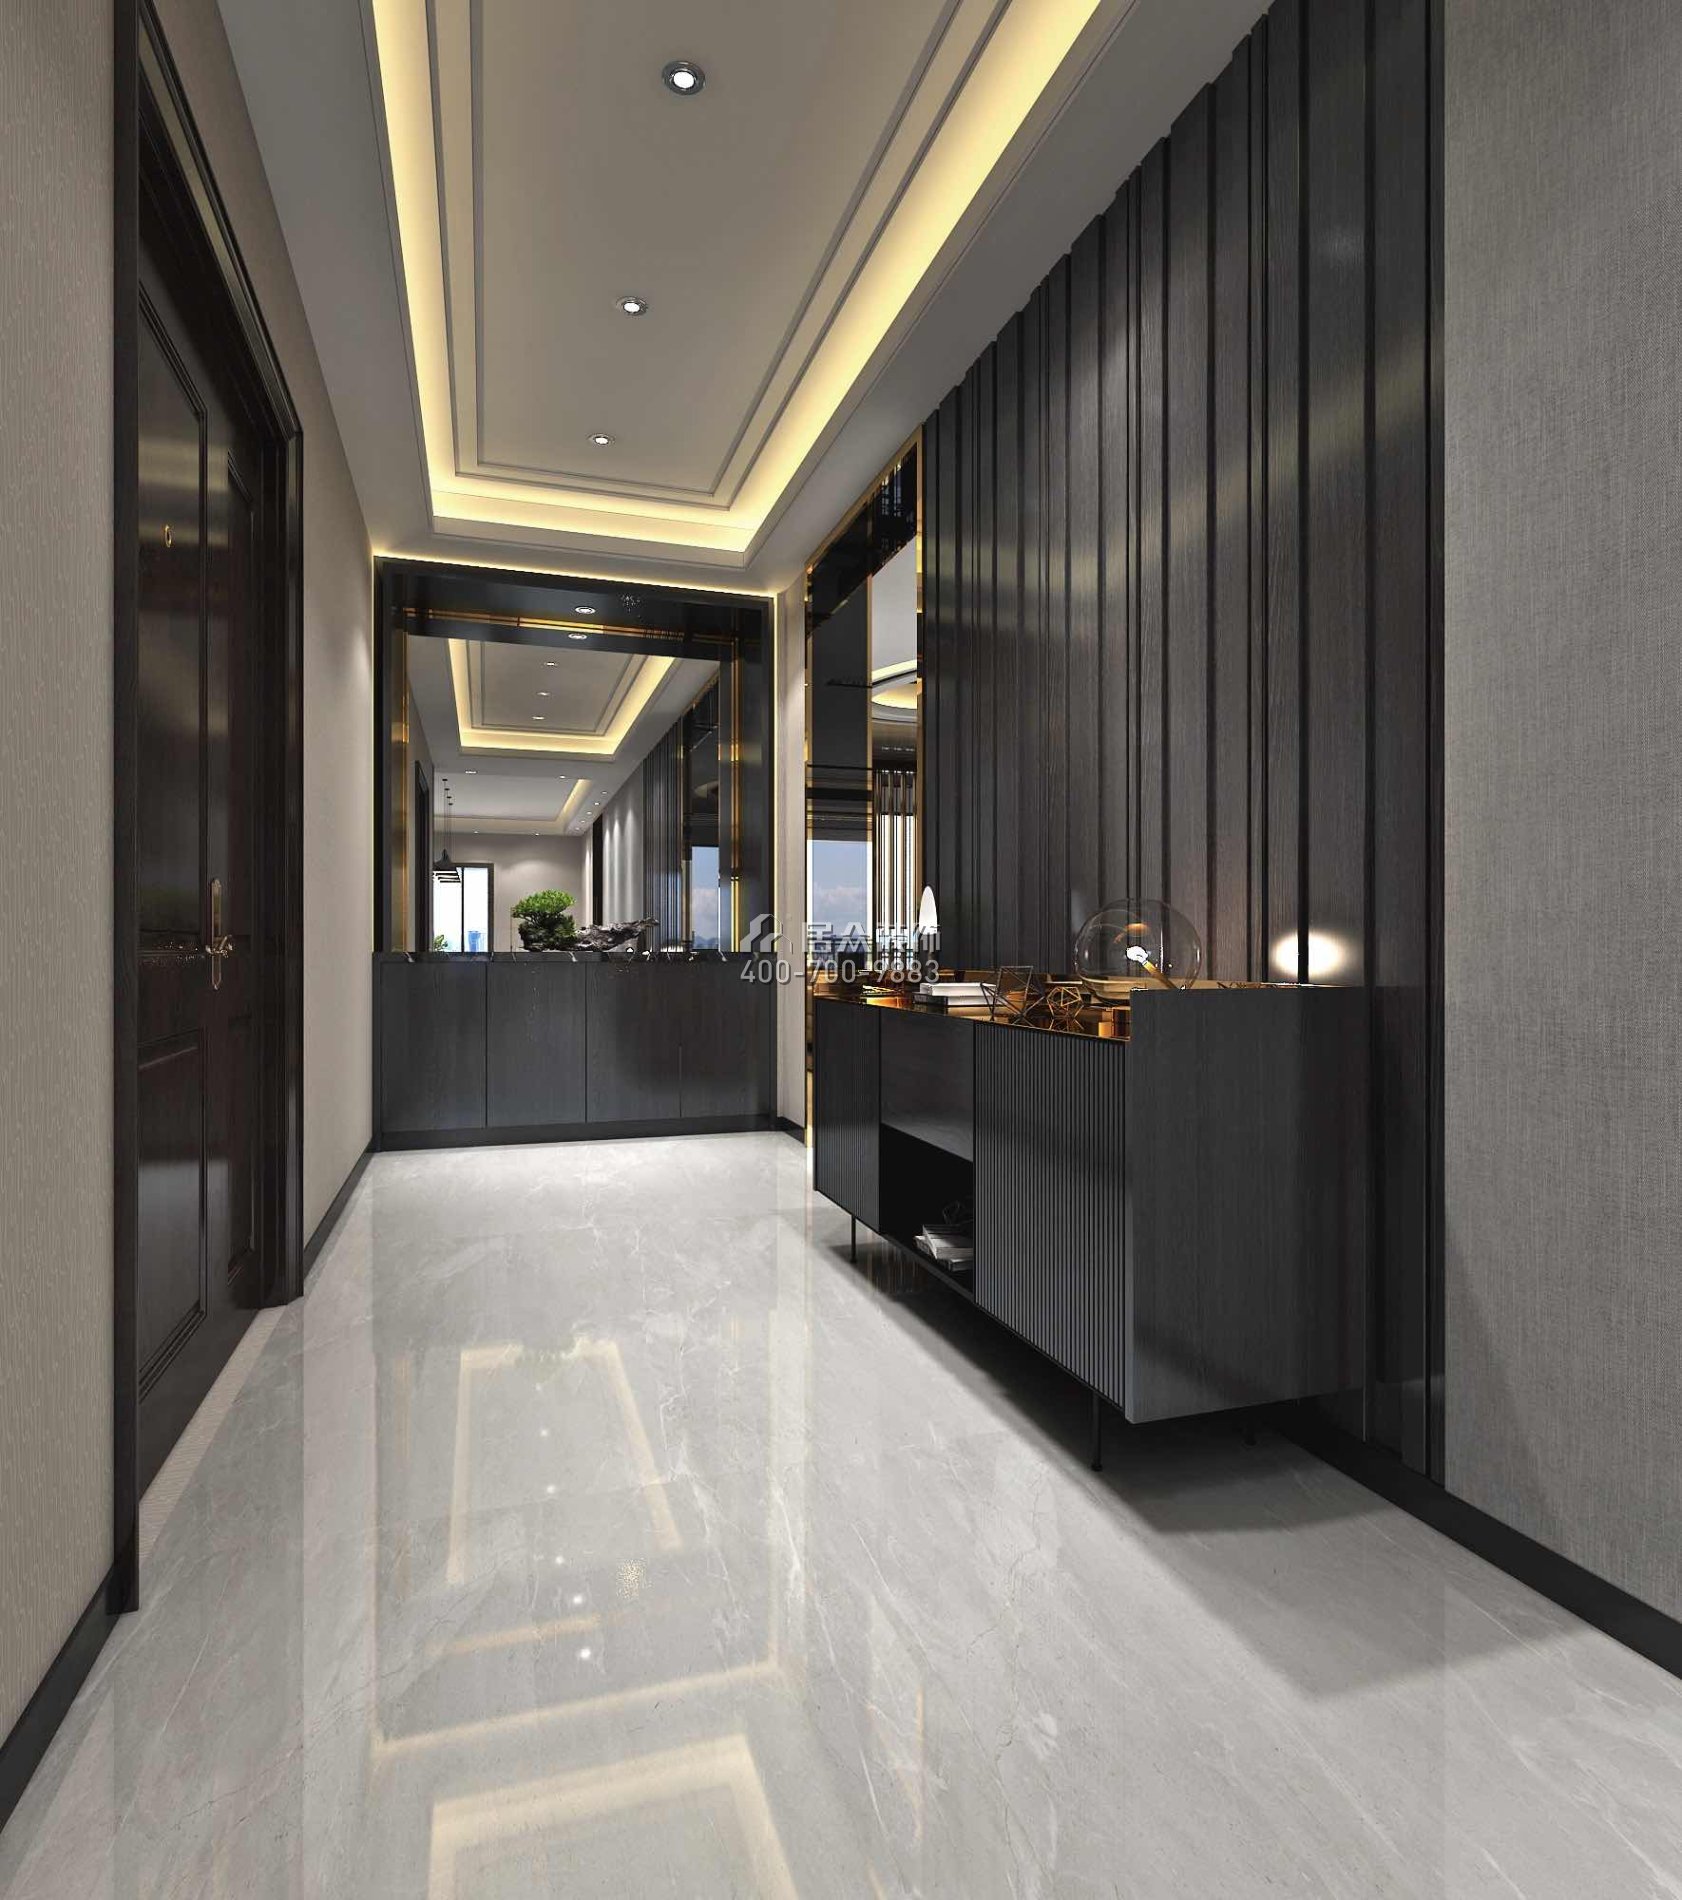 龙泉豪苑560平方米现代简约风格平层户型玄关装修效果图